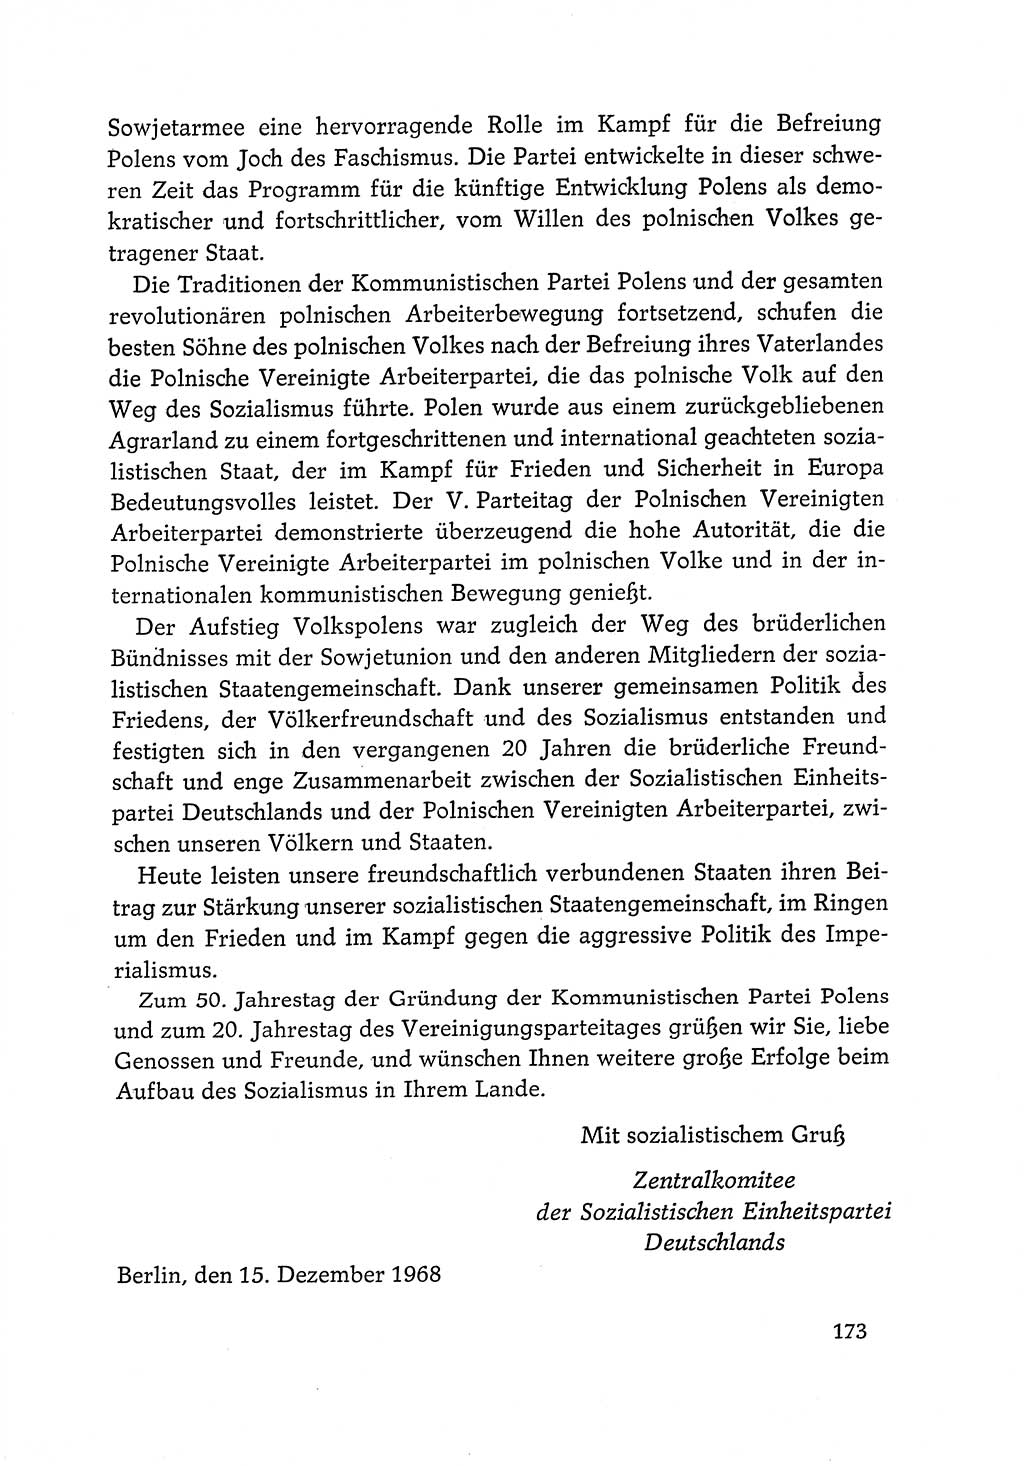 Dokumente der Sozialistischen Einheitspartei Deutschlands (SED) [Deutsche Demokratische Republik (DDR)] 1968-1969, Seite 173 (Dok. SED DDR 1968-1969, S. 173)